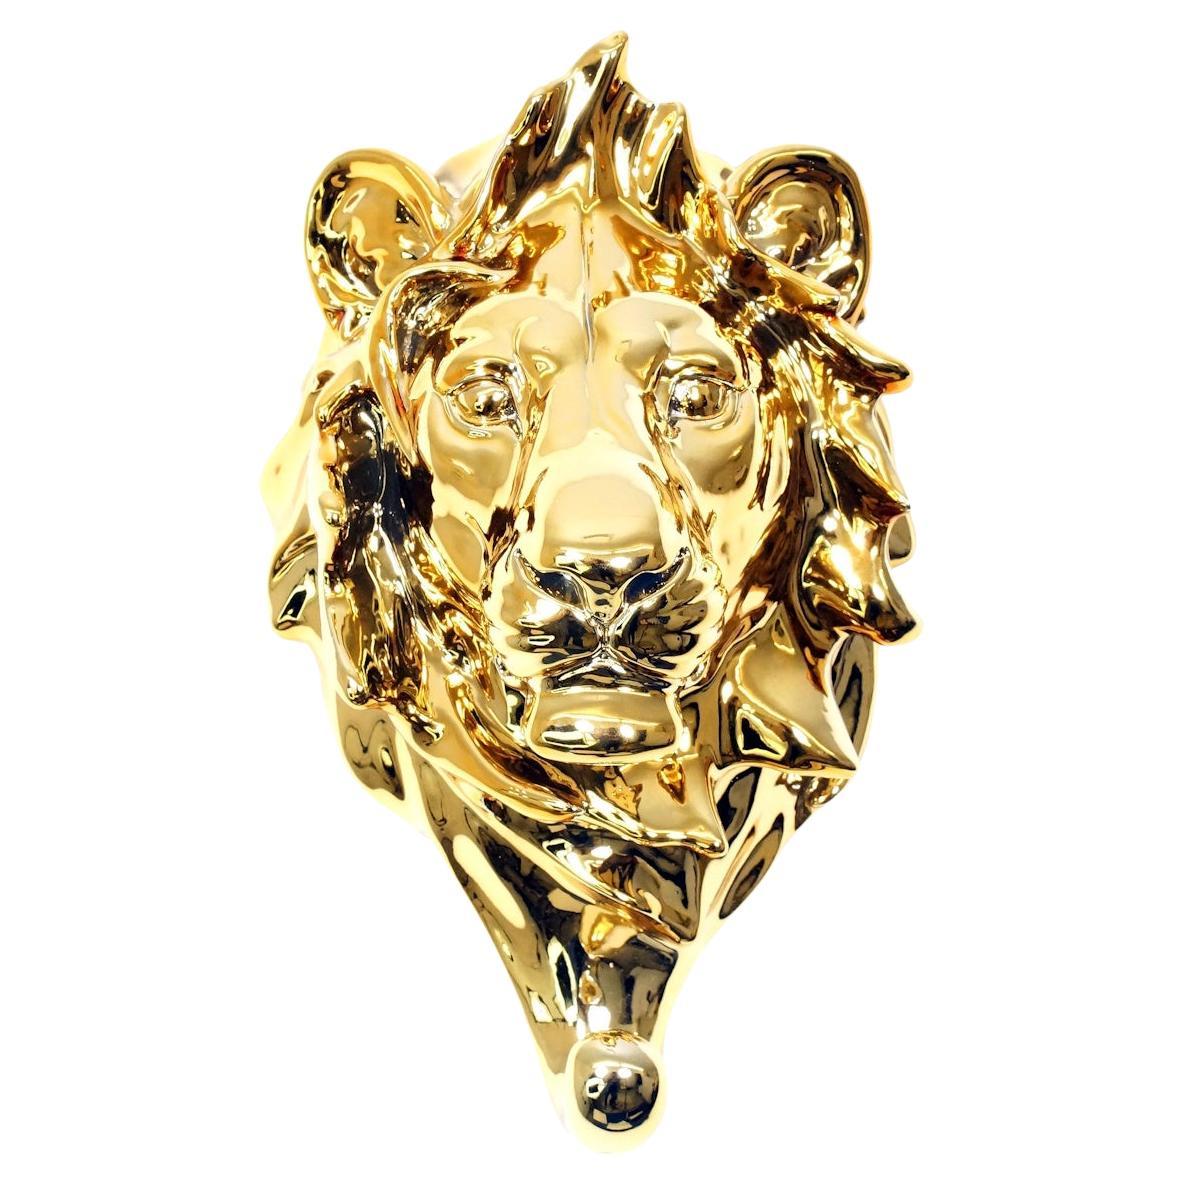 Serviergeschirrhalter aus vergoldeter Bronze mit dem Kopf eines Löwen, 20. Jahrhundert.